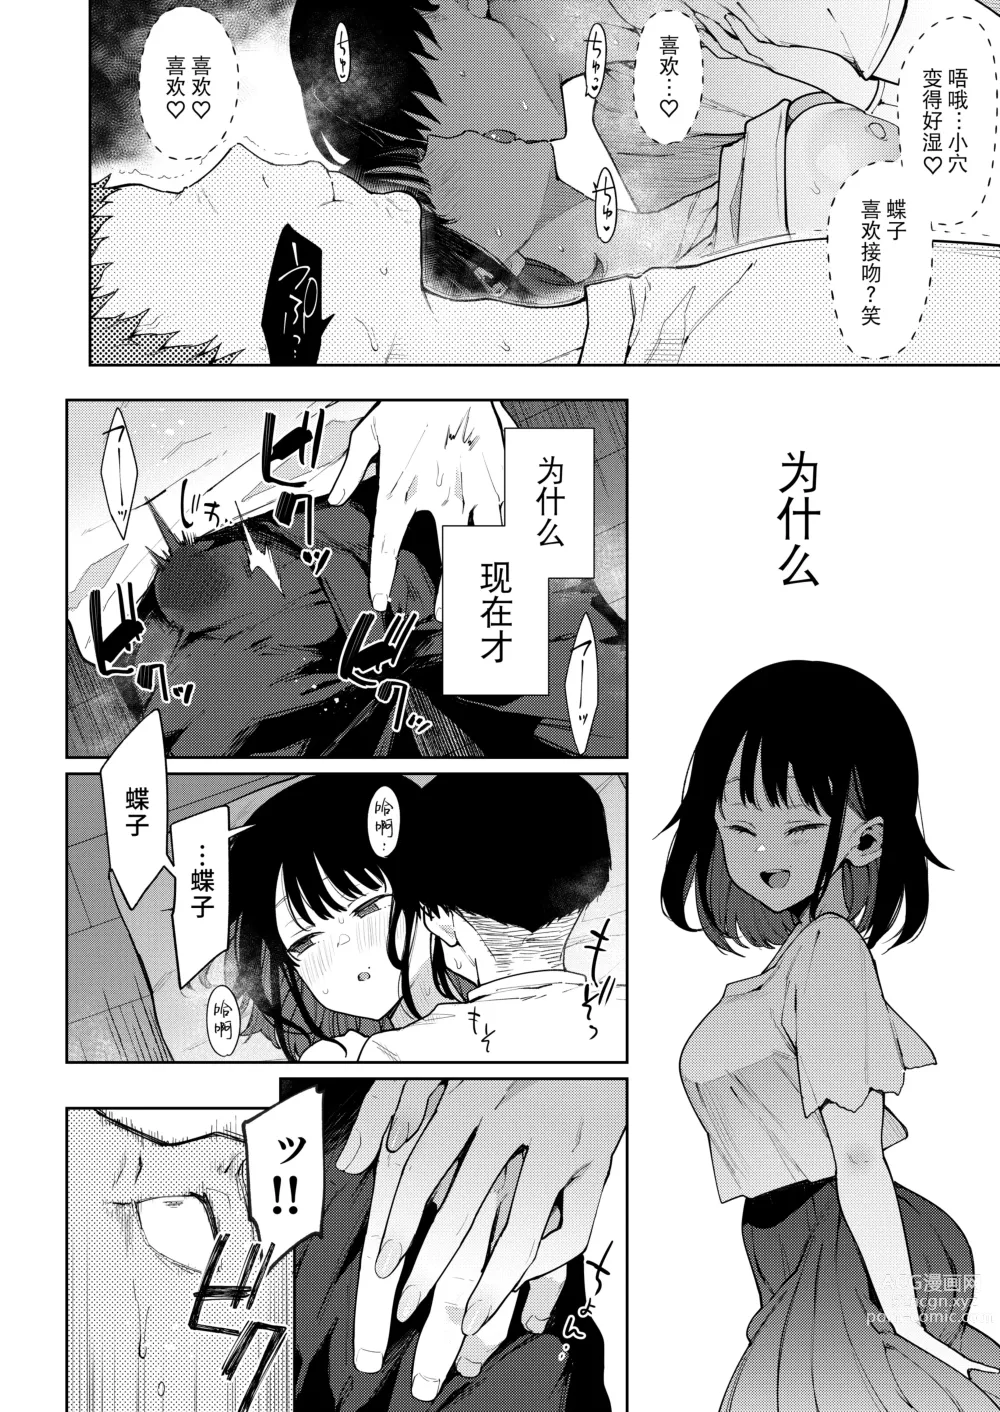 Page 174 of doujinshi Chouko I-V